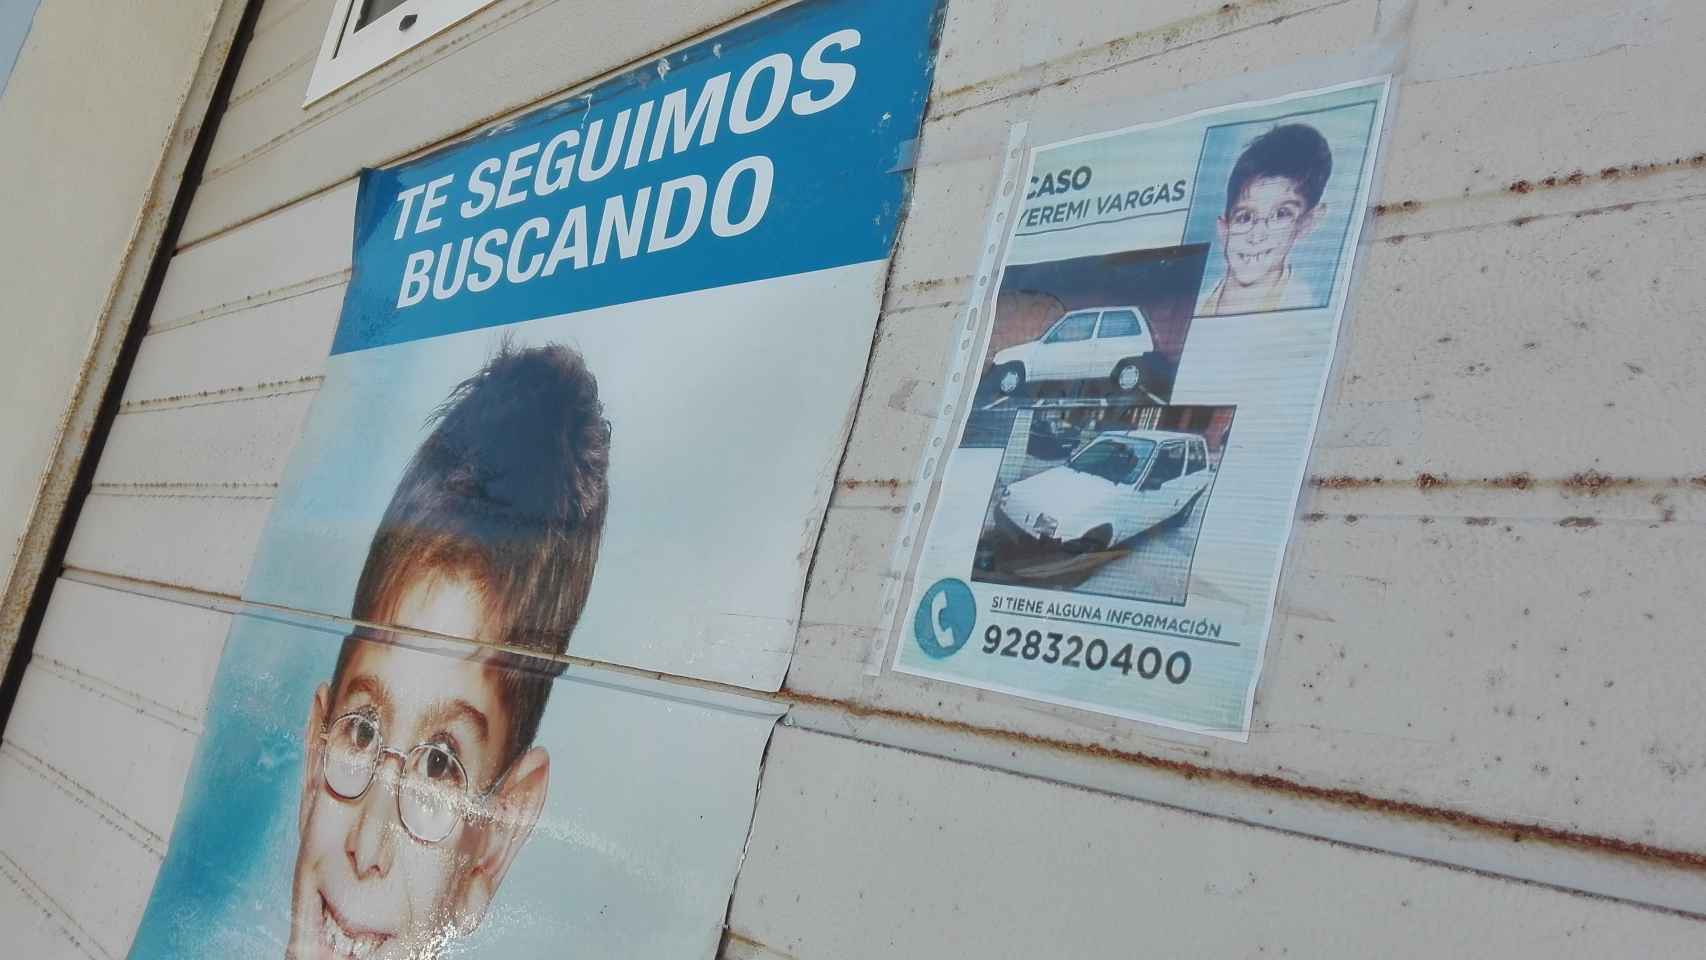 Fachada de la vivienda de los abuelos de Yéremi Vargas, con carteles buscando.